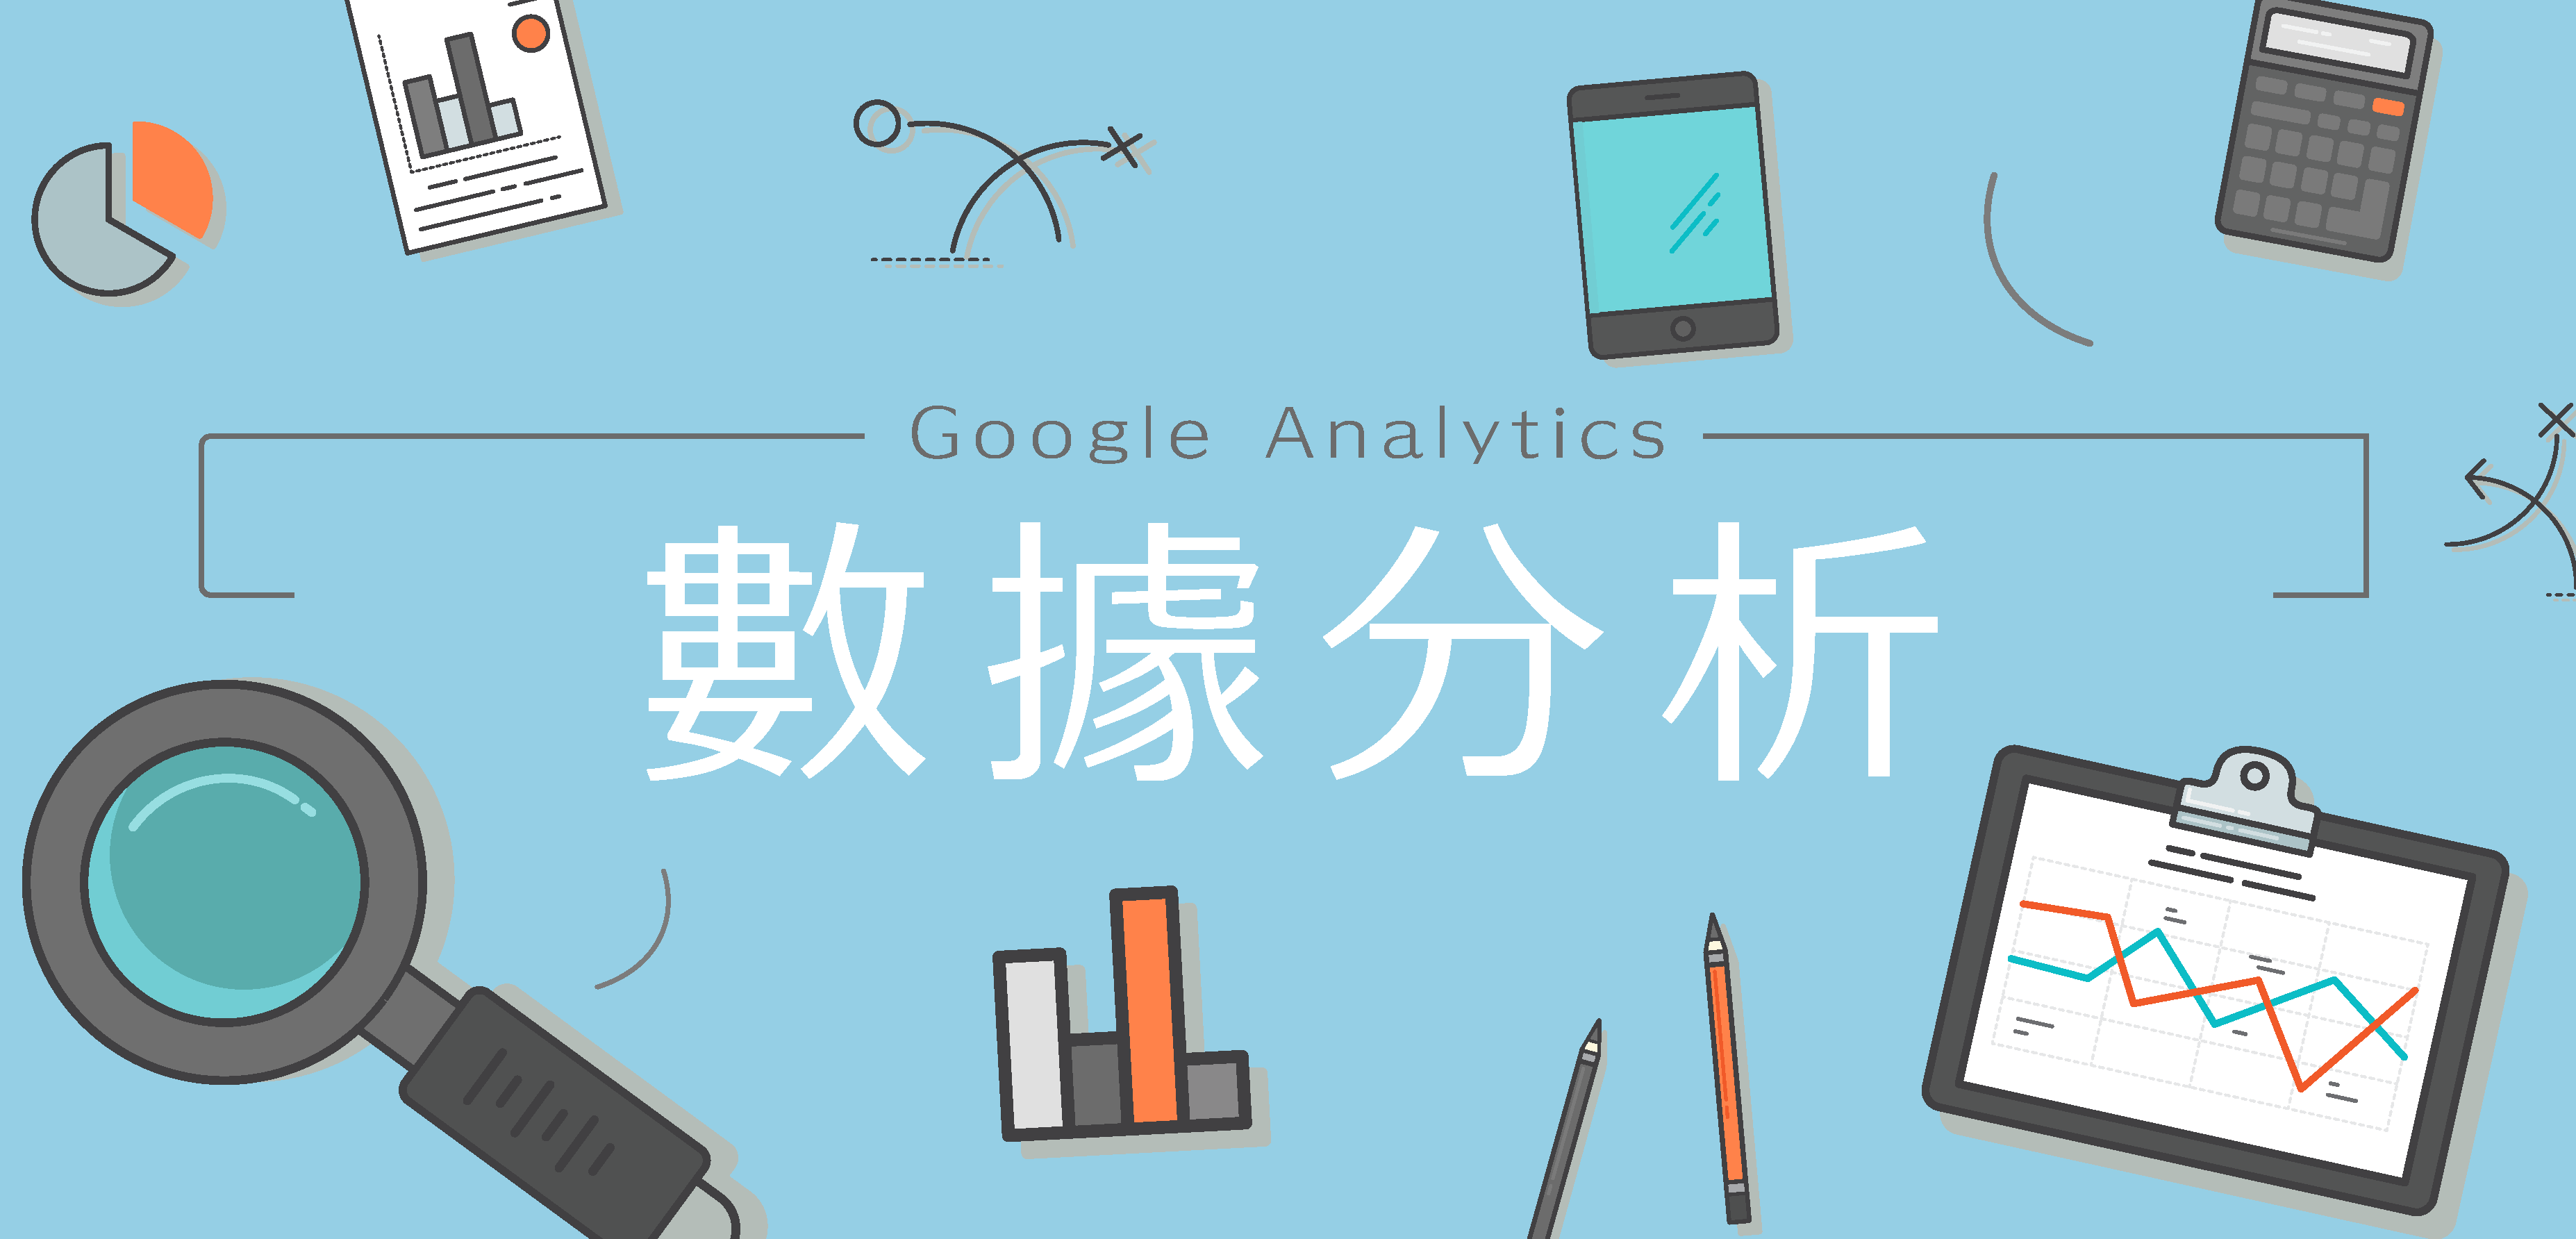 如何利用Google Analytics 分析網店數據？先從了解基礎介面開始